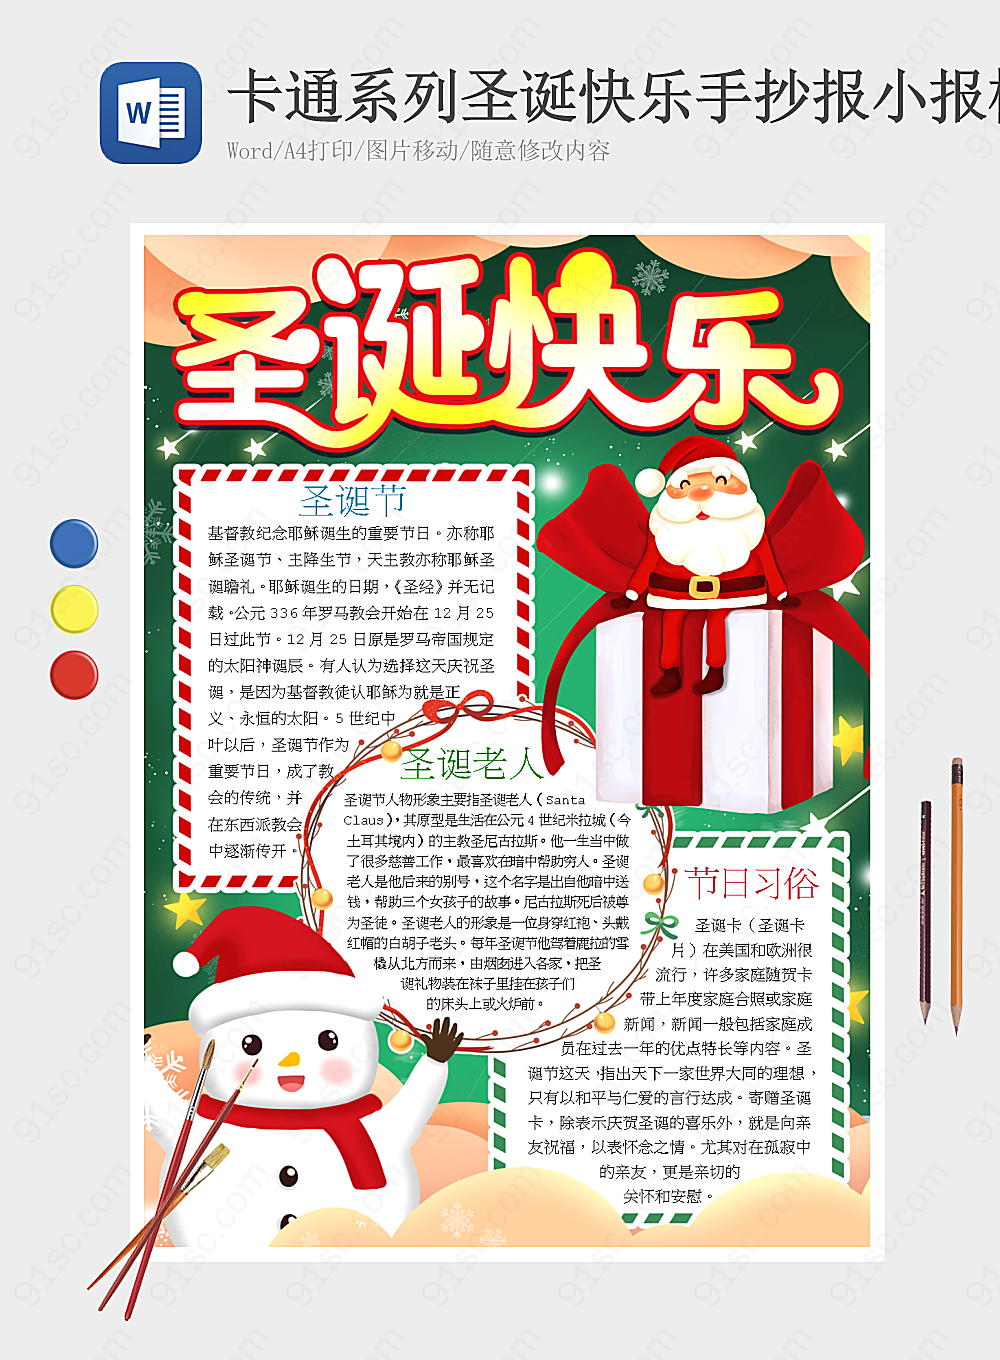 卡通风格的圣诞快乐手抄报模板设计节日手抄报小报海报Word模板下载